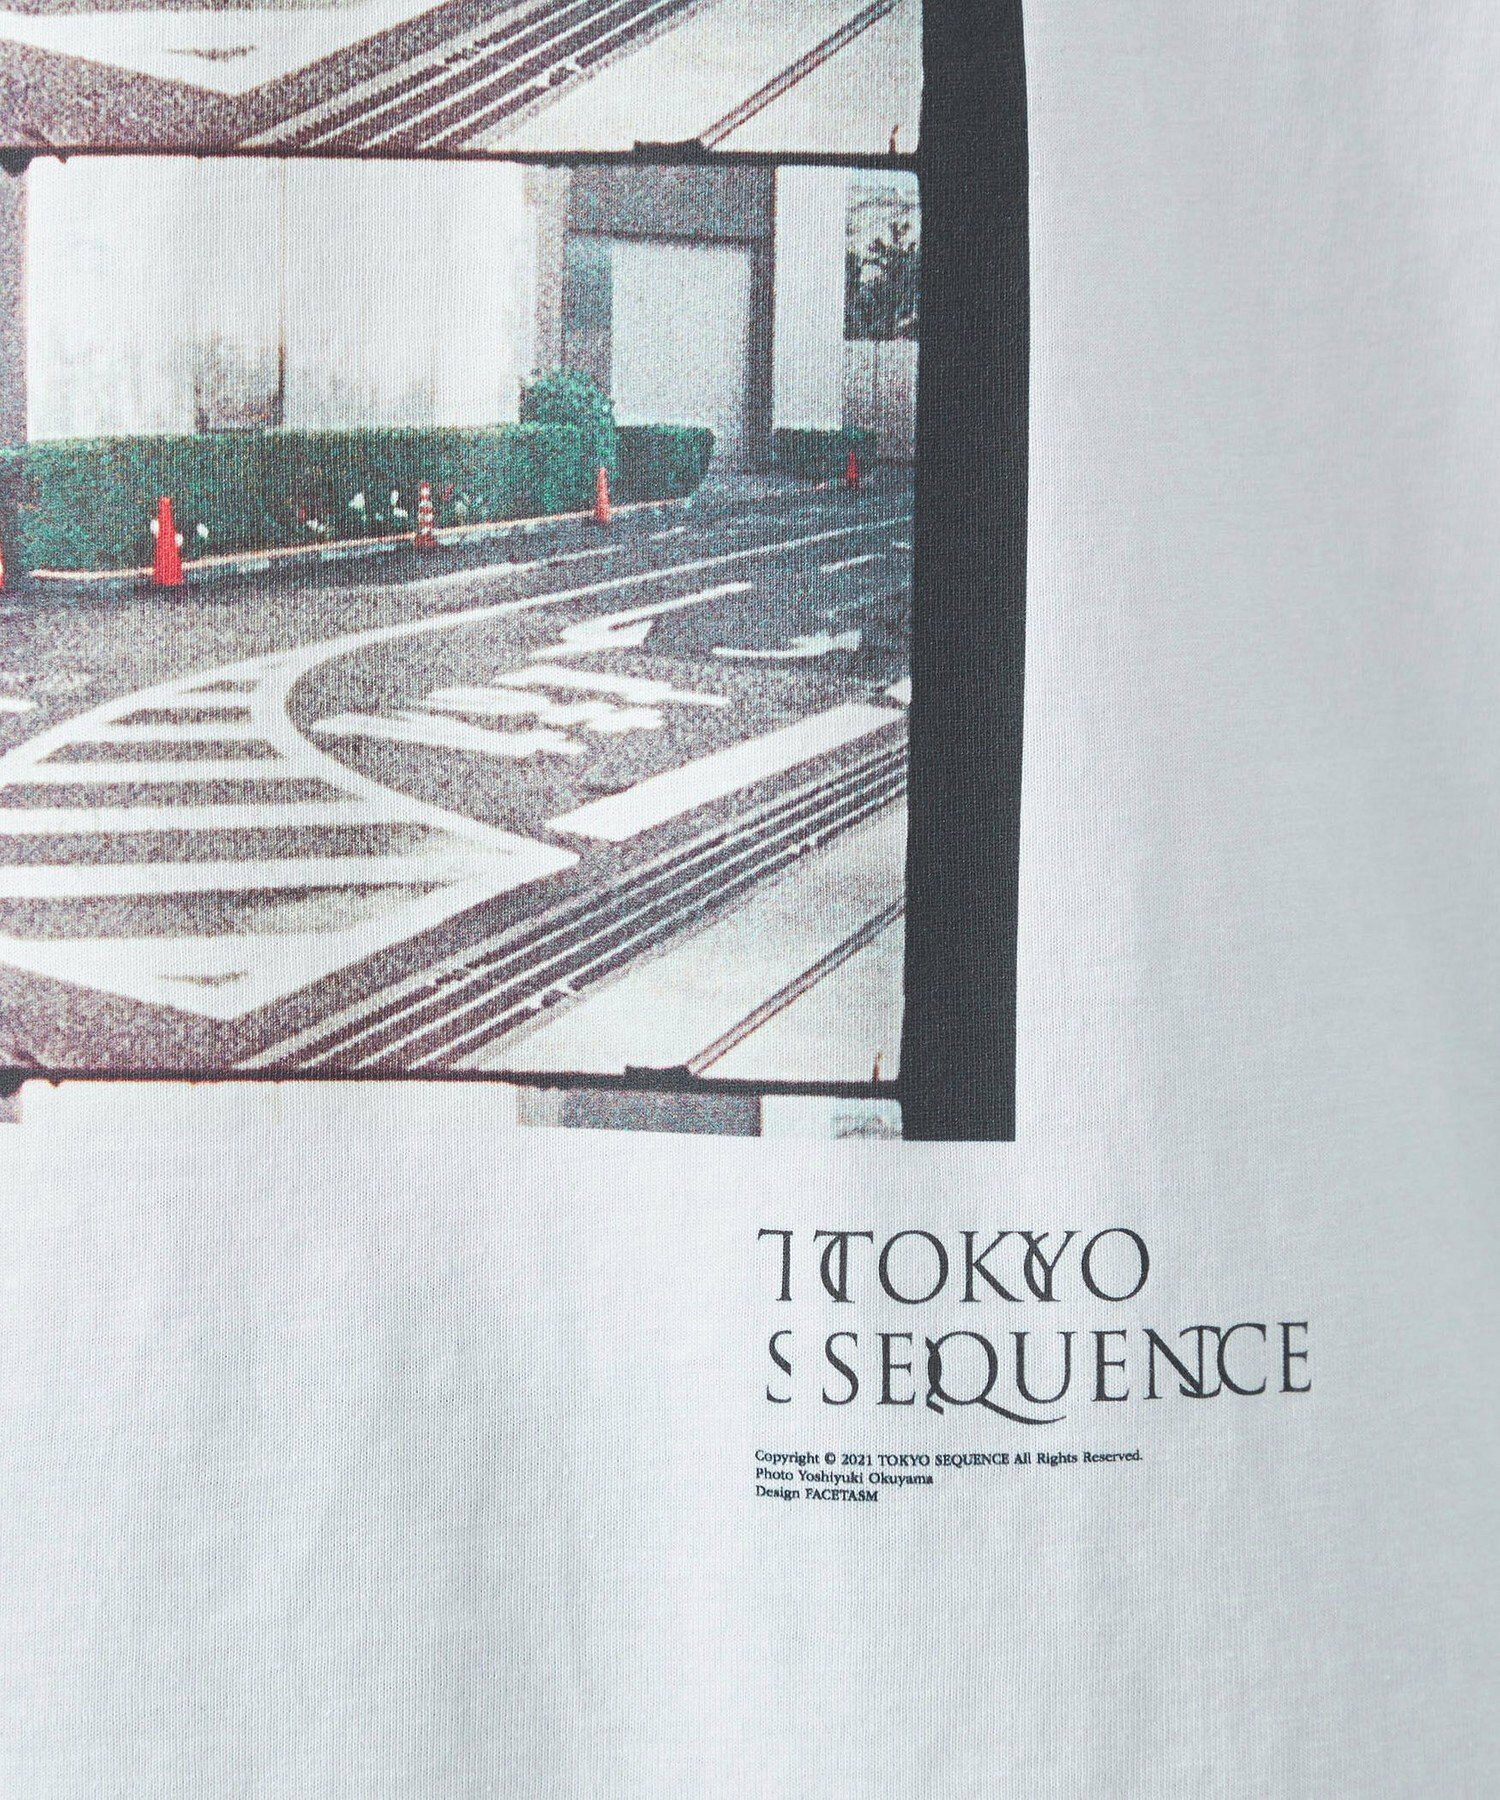 【別注】<TOKYO SEQUENCE*FRUIT OF THE LOOM>GLR プリントTシャツ